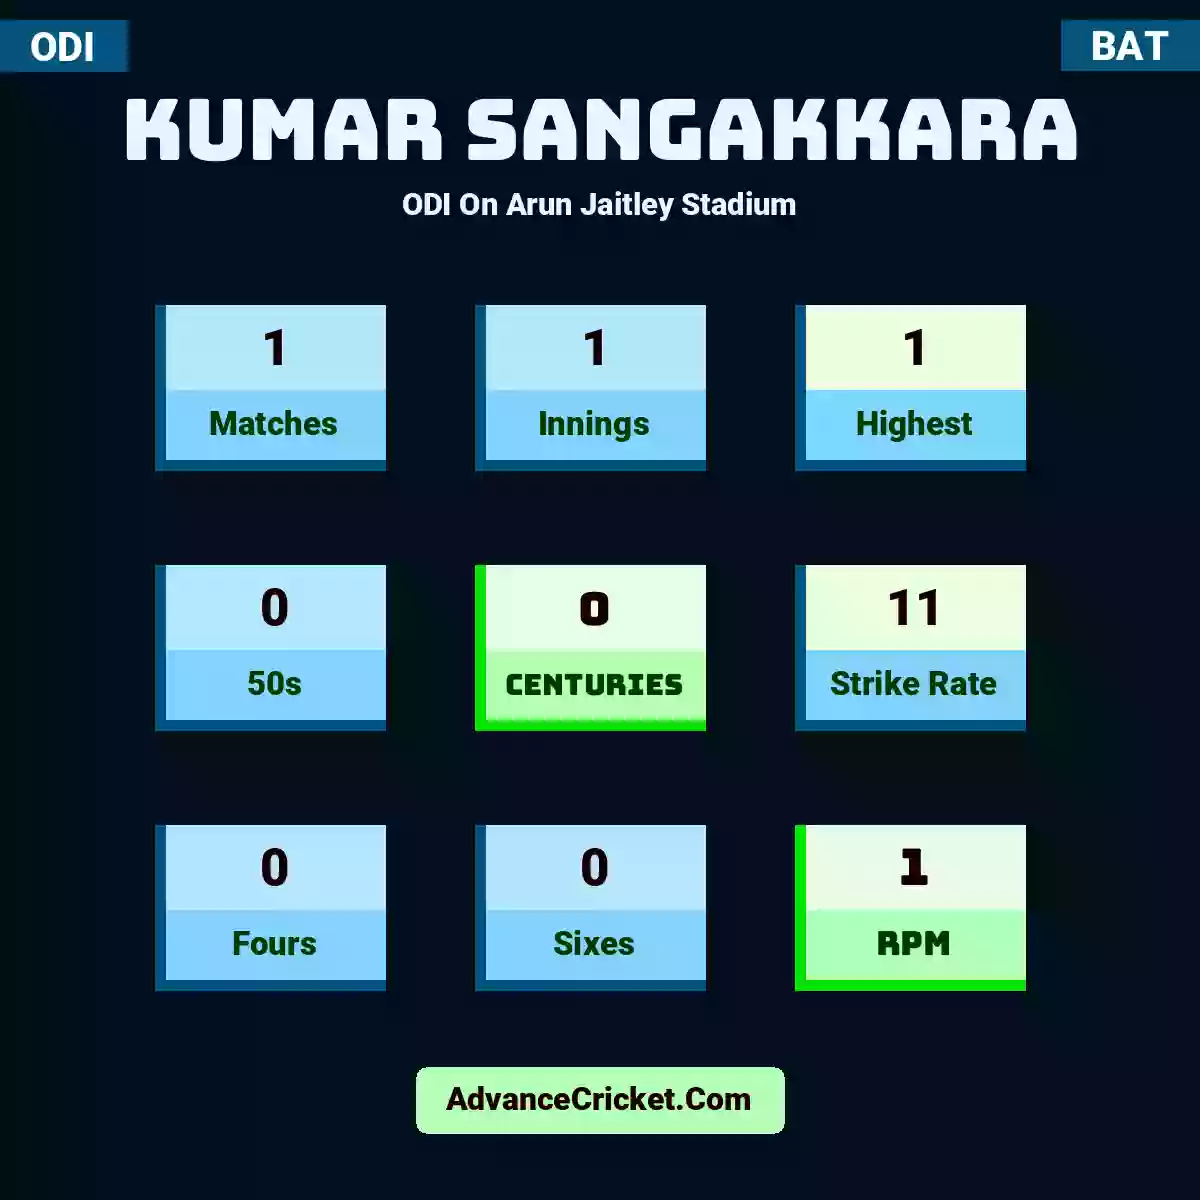 Kumar Sangakkara ODI  On Arun Jaitley Stadium, Kumar Sangakkara played 1 matches, scored 1 runs as highest, 0 half-centuries, and 0 centuries, with a strike rate of 11. K.Sangakkara hit 0 fours and 0 sixes, with an RPM of 1.